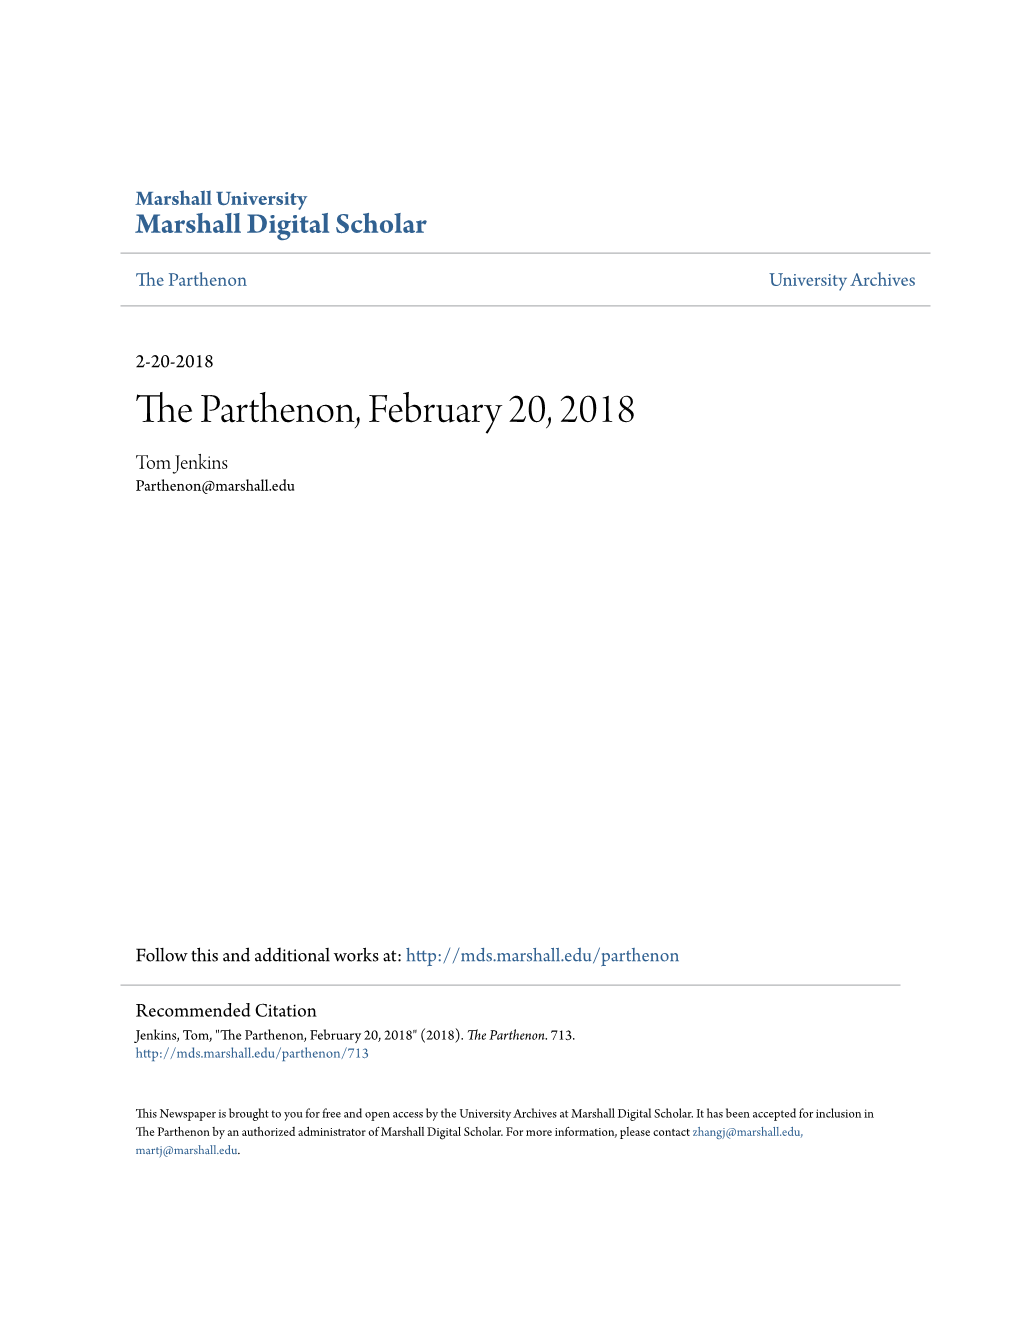 The Parthenon, February 20, 2018